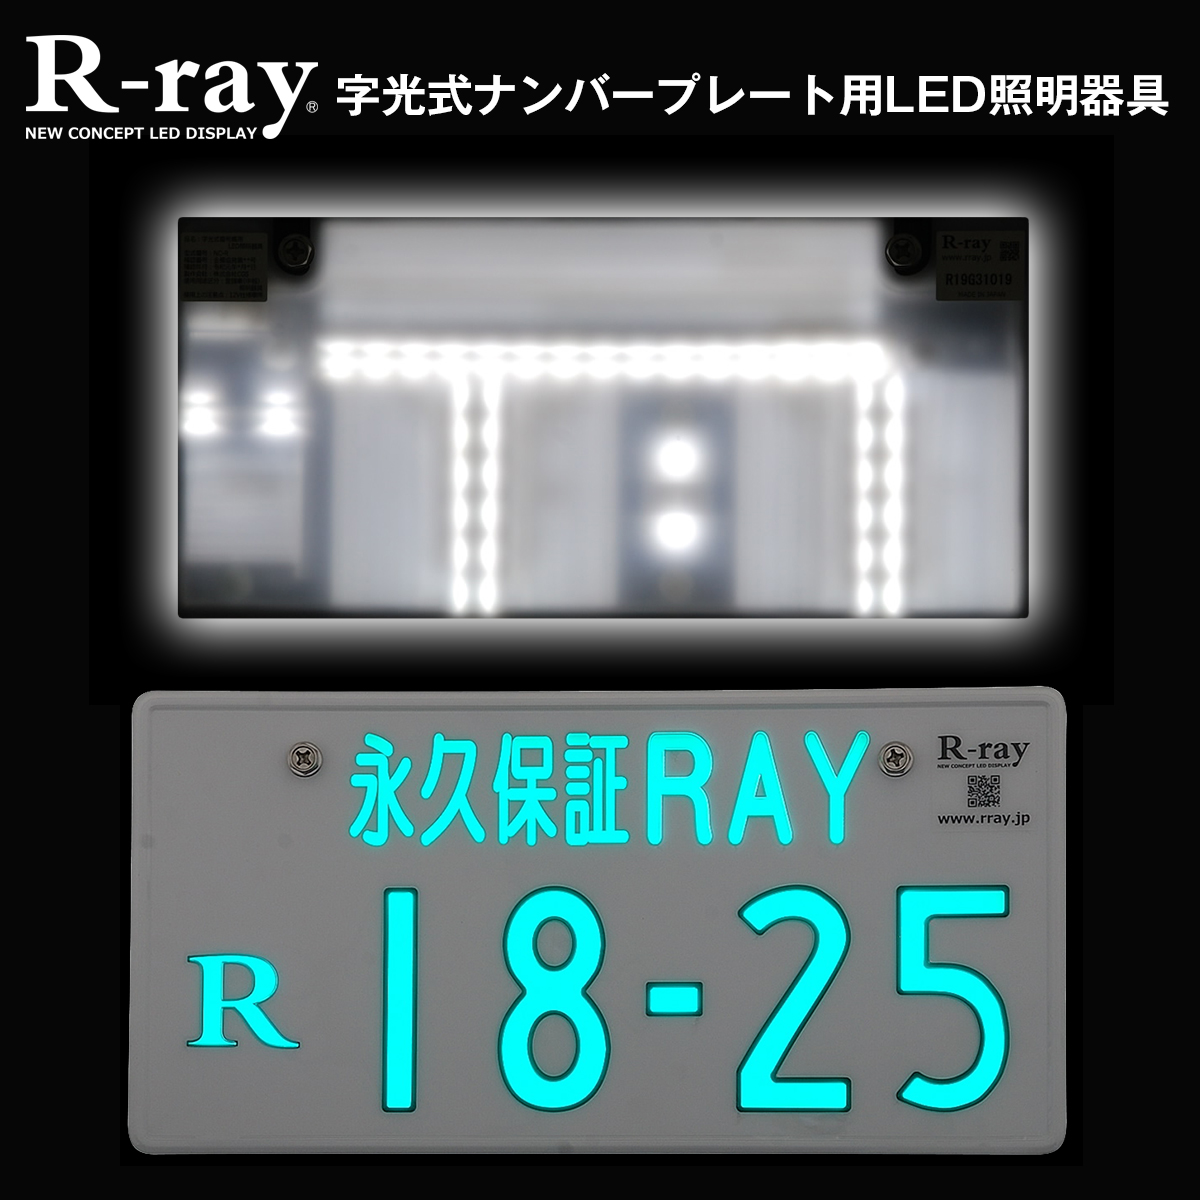 ムラなくいつまでも新品の明るさで光る！ナンバープレート用LED照明器具「R-ray」11月11日（月）発売｜株式会社CGSのプレスリリース